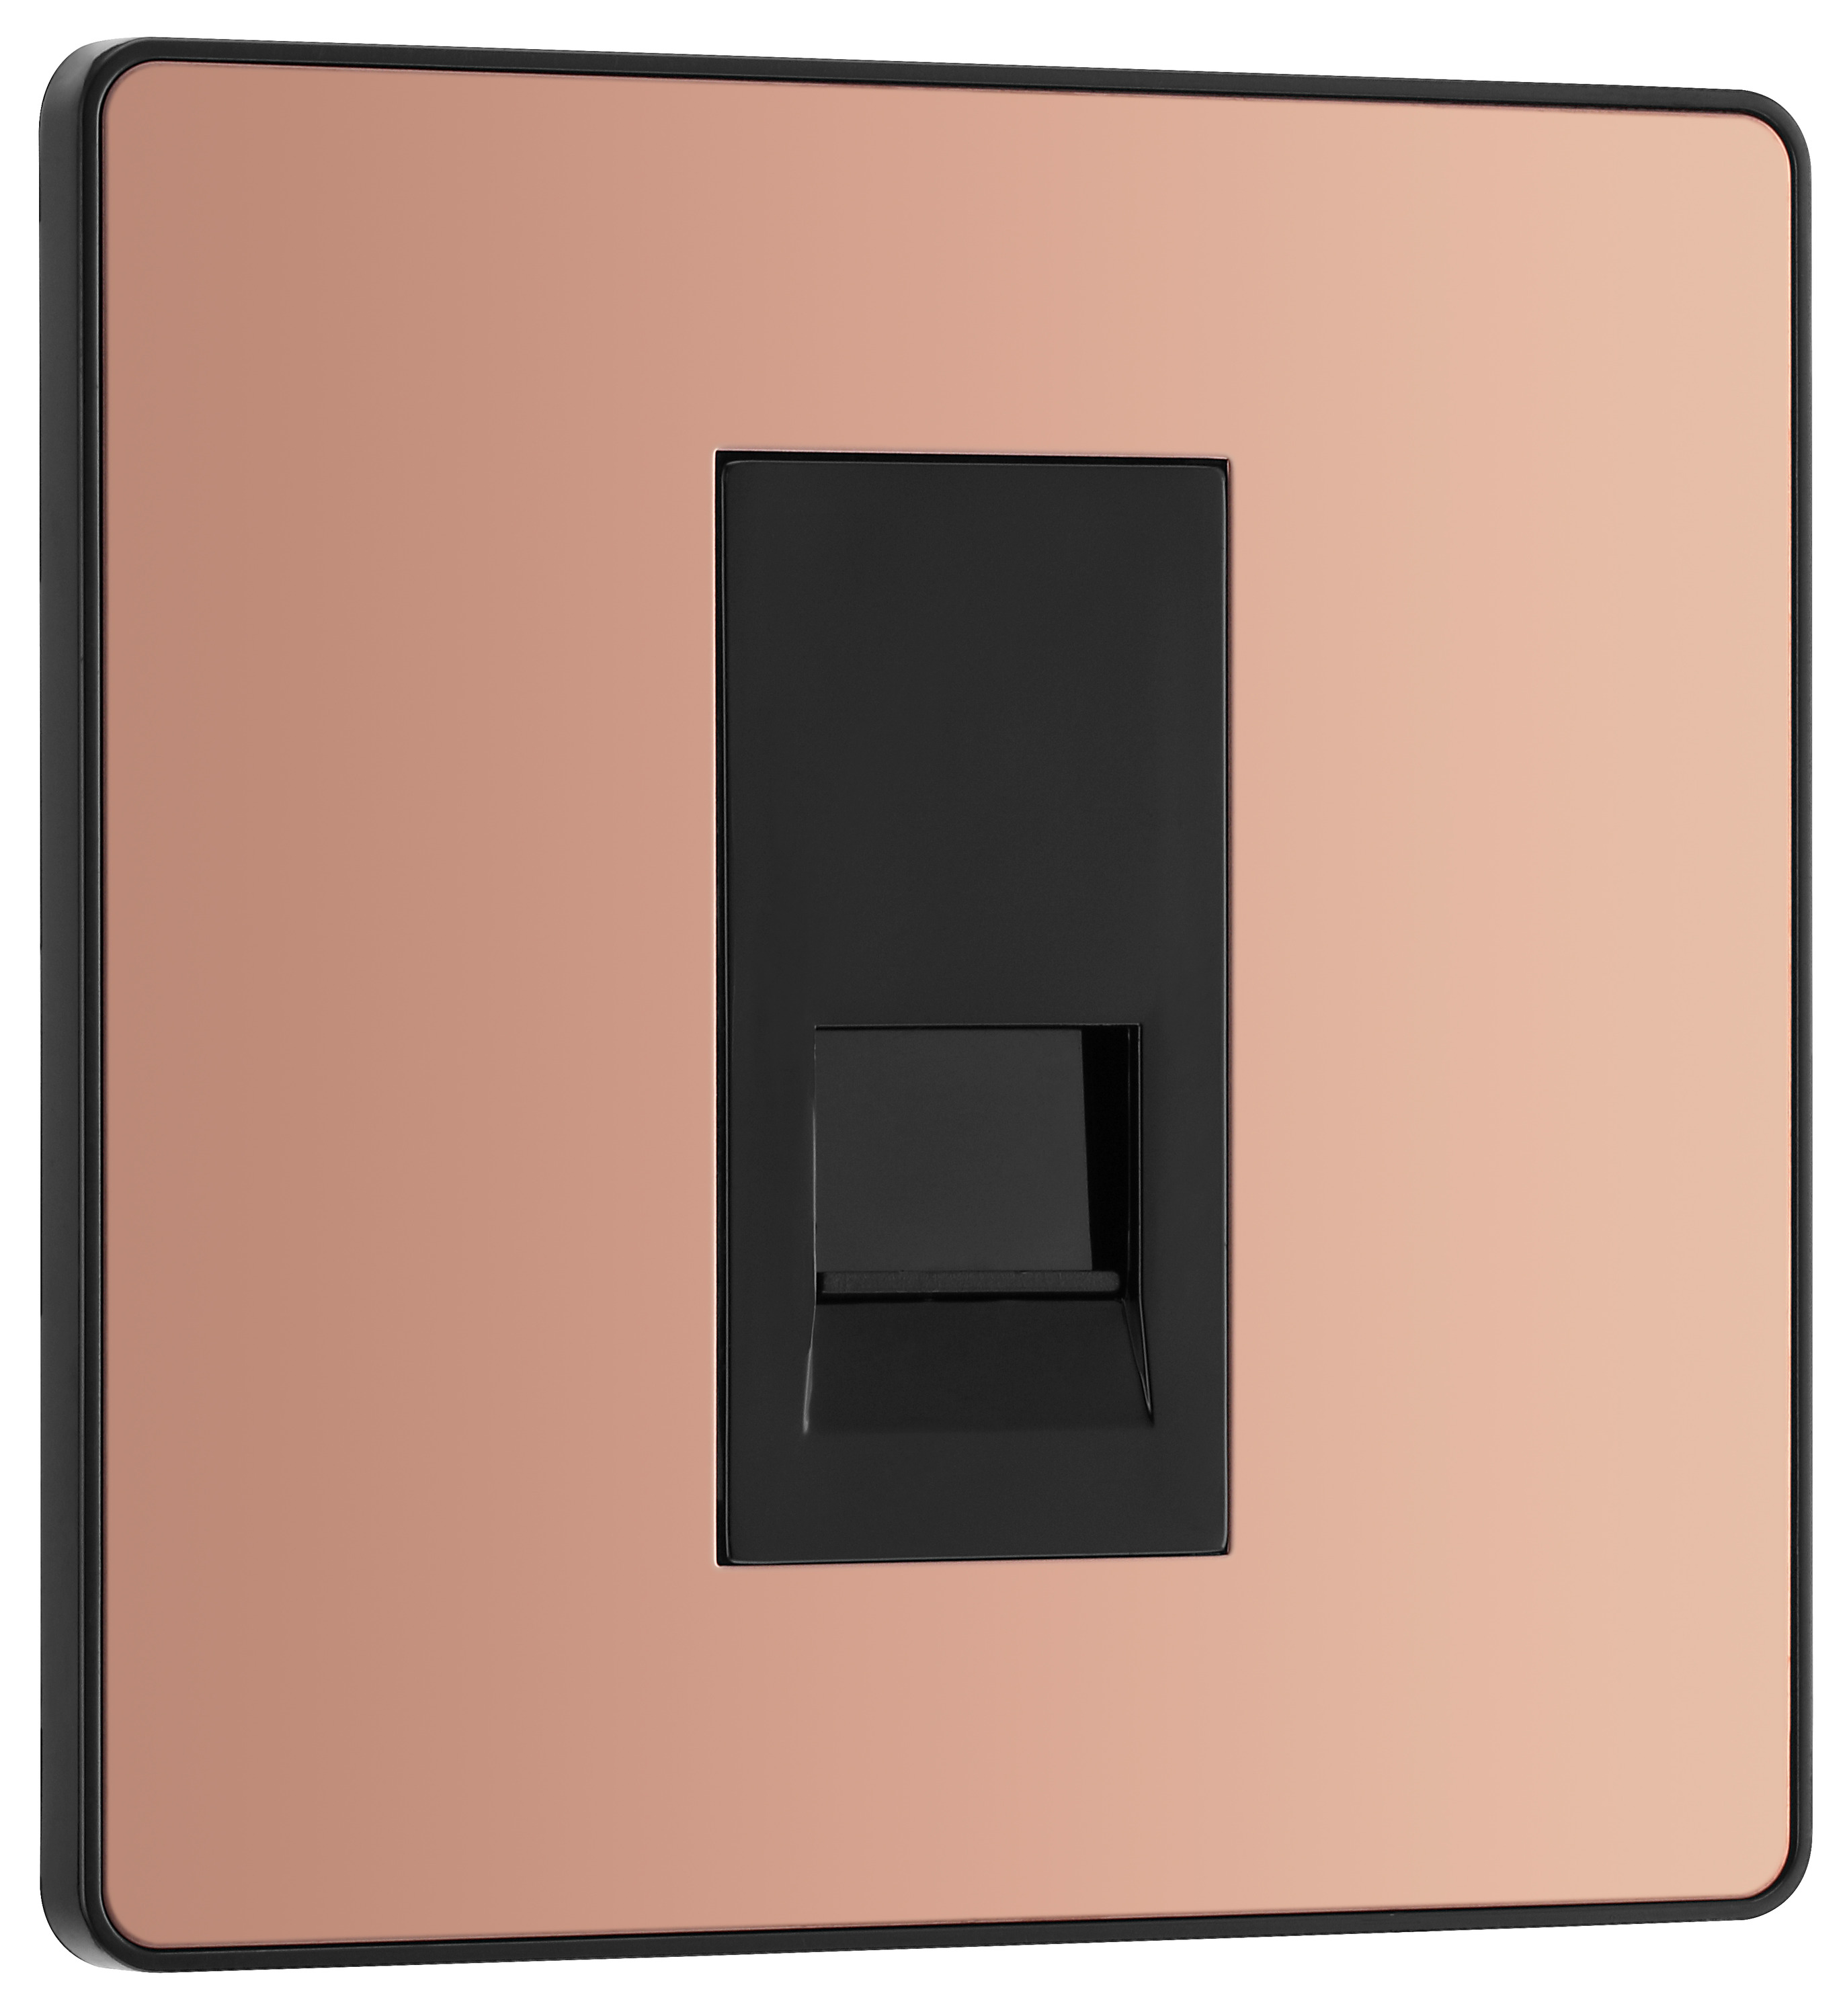 Image of BG Evolve Polished Copper Single Secondary Telephone Socket